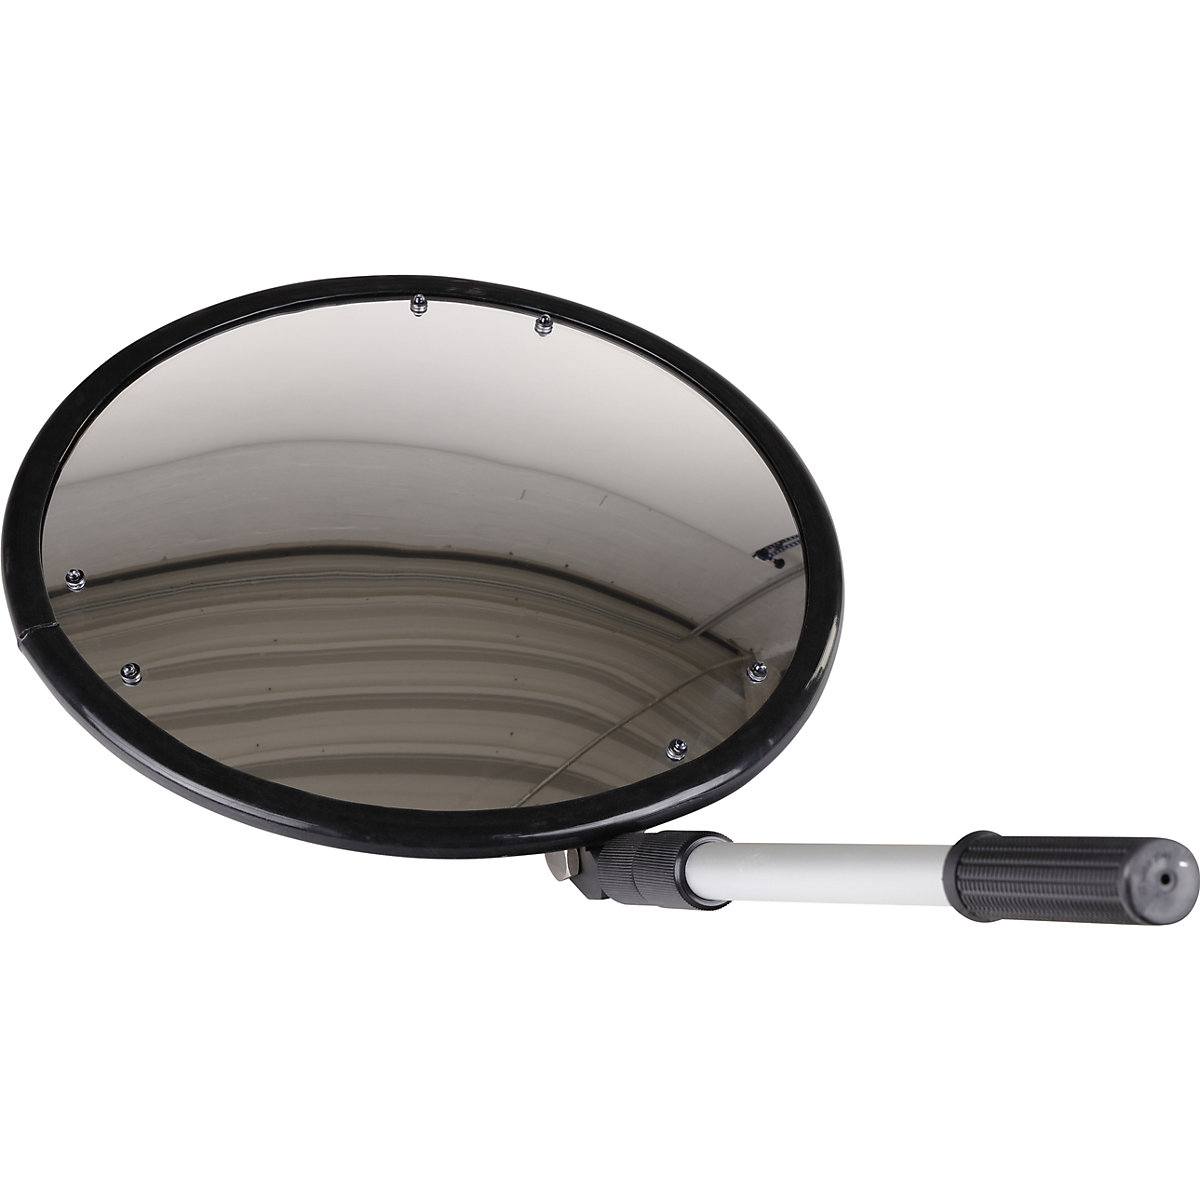 Espelho de inspeção com braço telescópico, redondo, com pés rolantes, Ø 350 mm, com luz-7